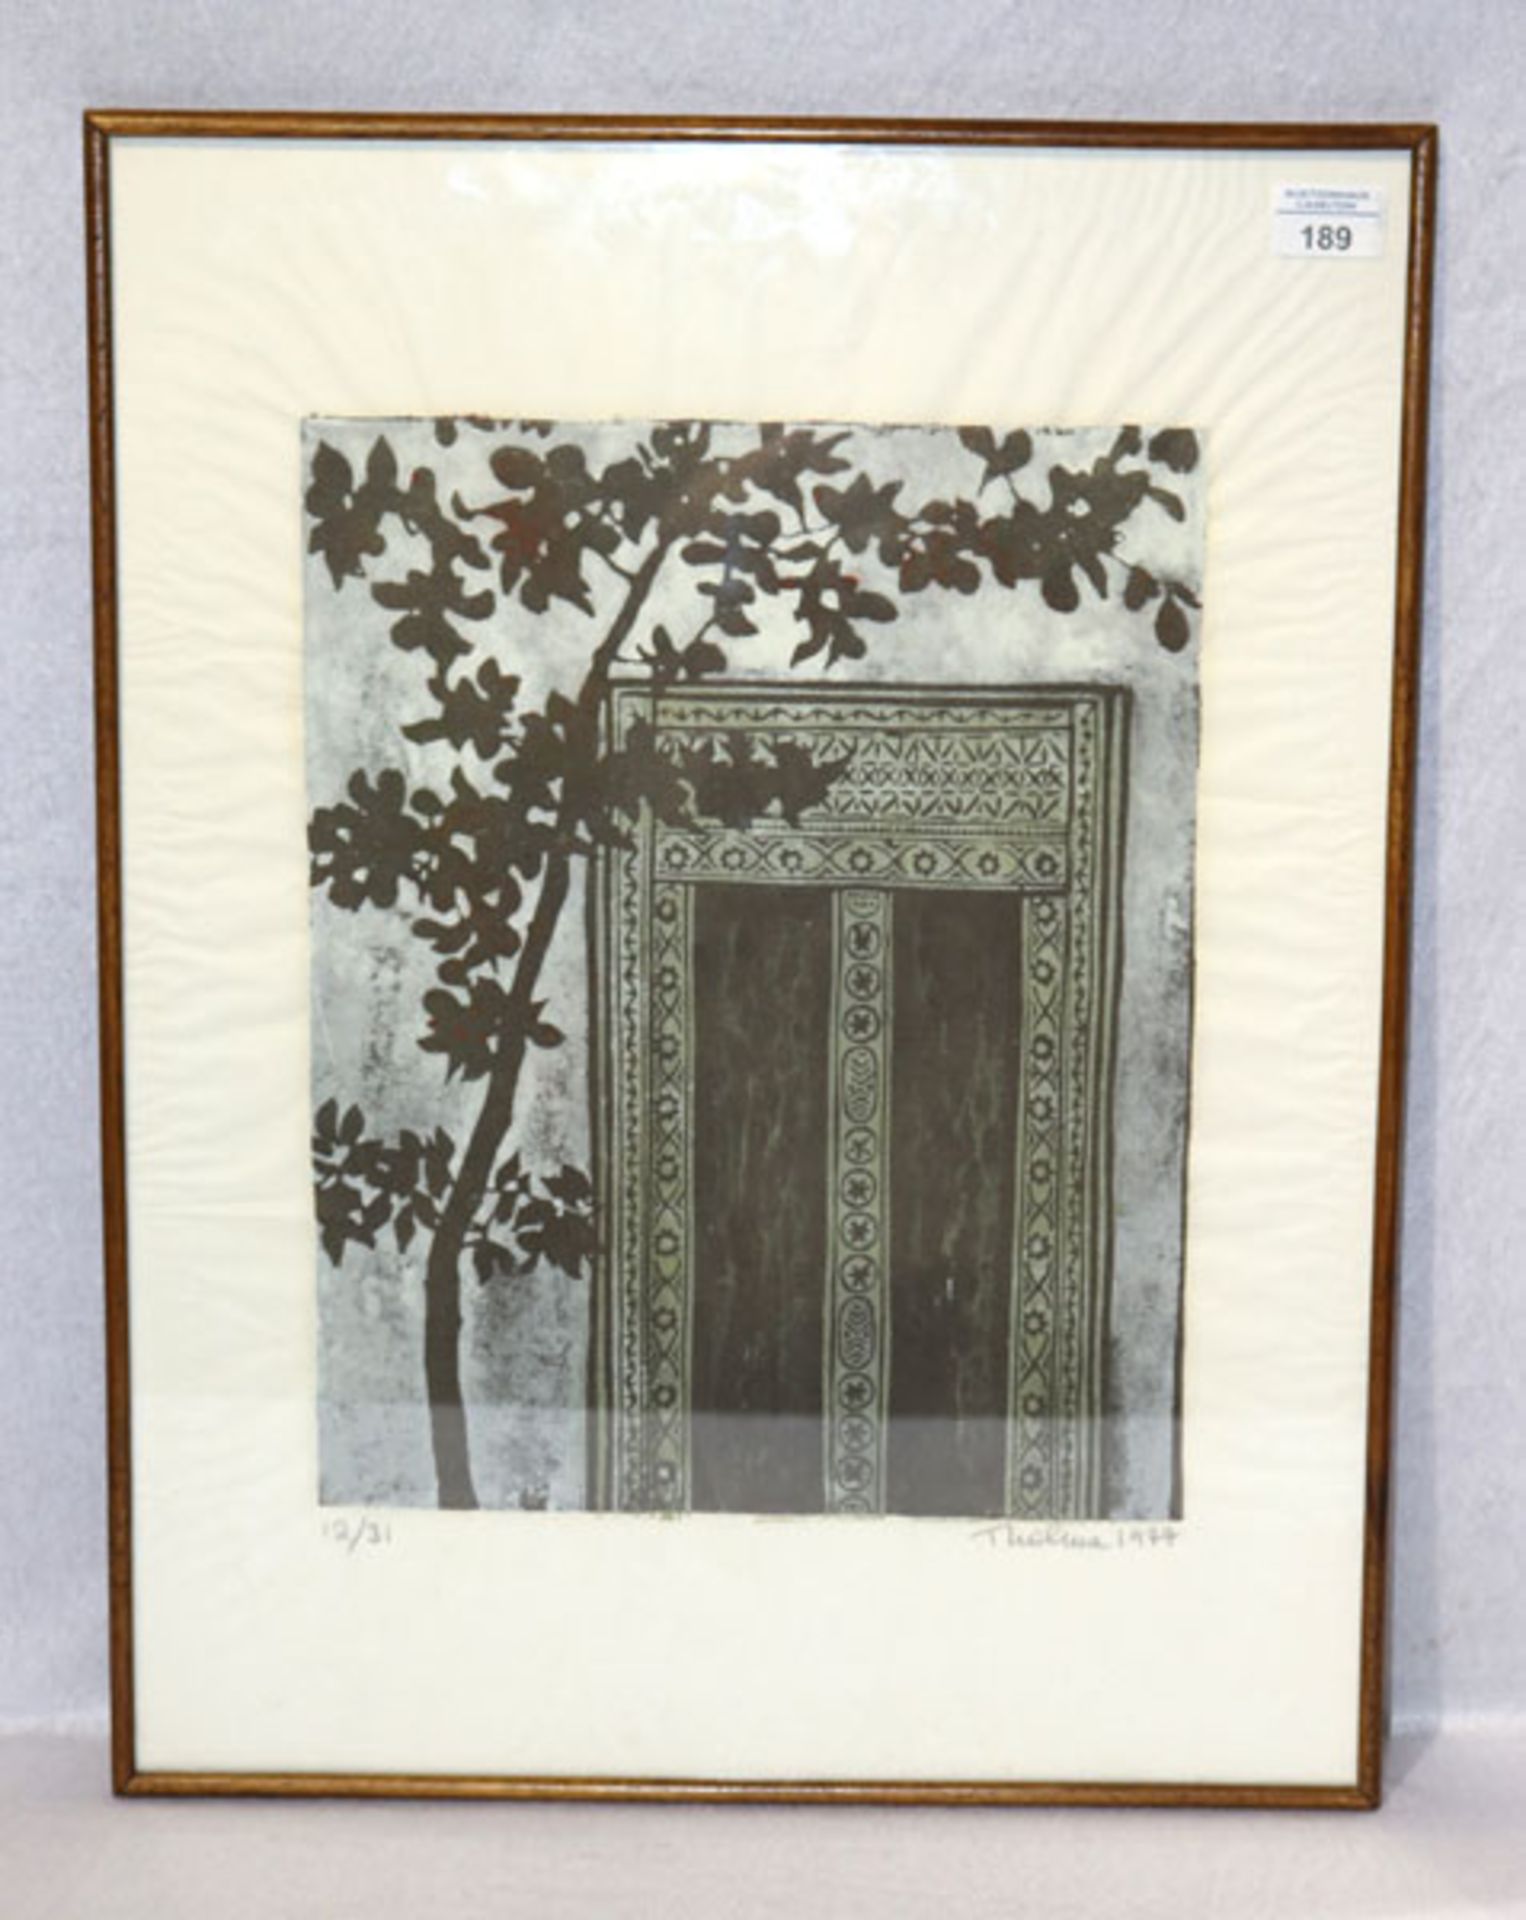 Holzschnitt 'Arabische Tür', Nr. 12/31, signiert Thelma ? 1977, unter Glas gerahmt, incl. Rahmen